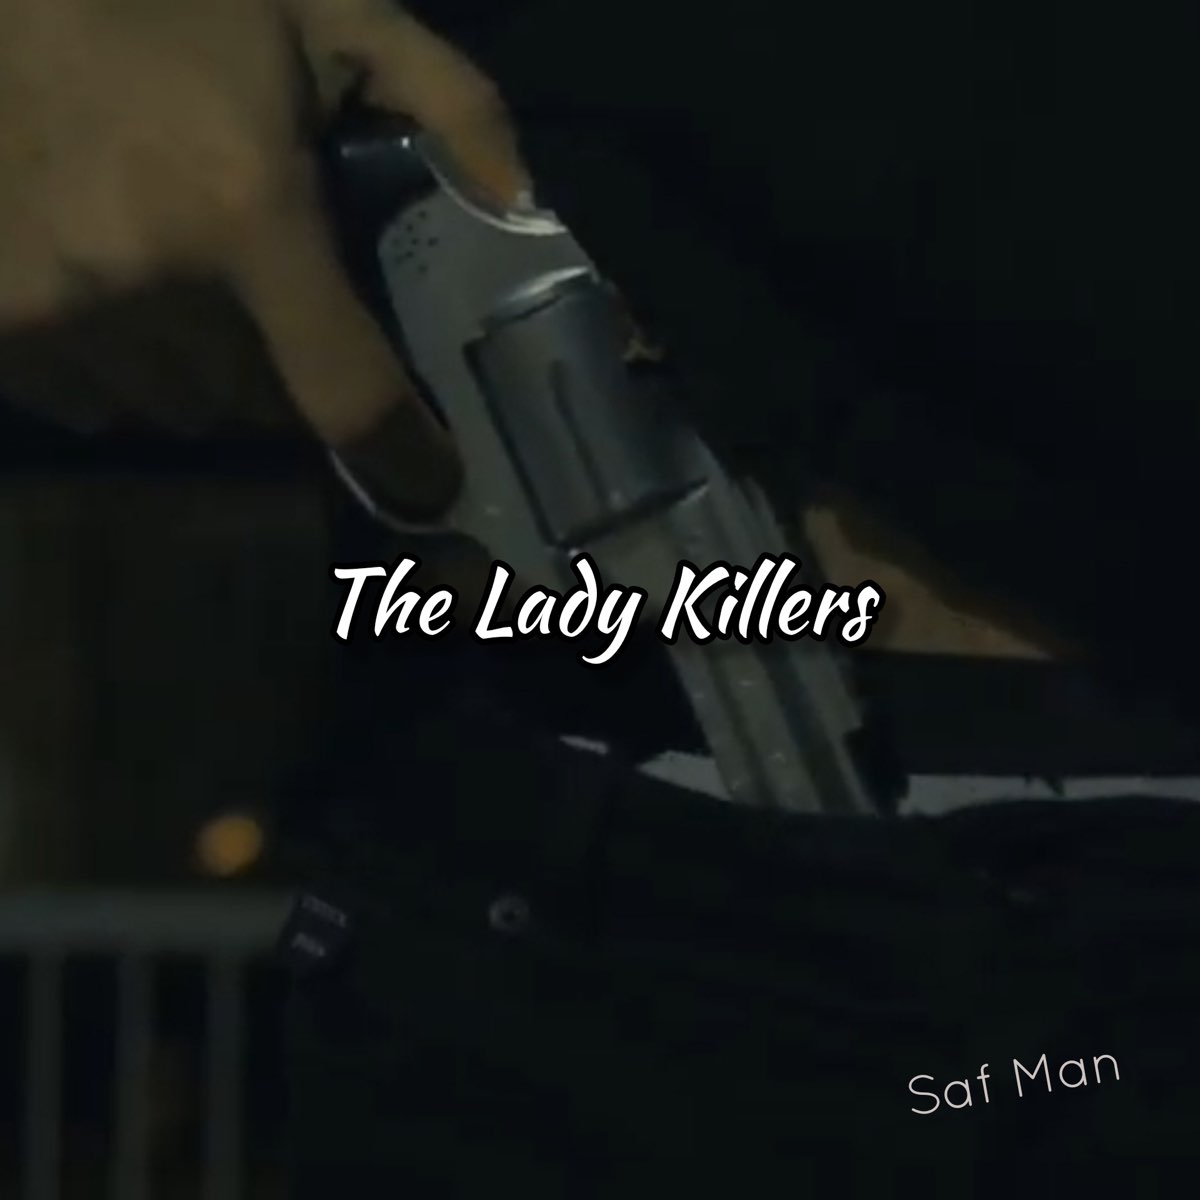 Lady killer песня